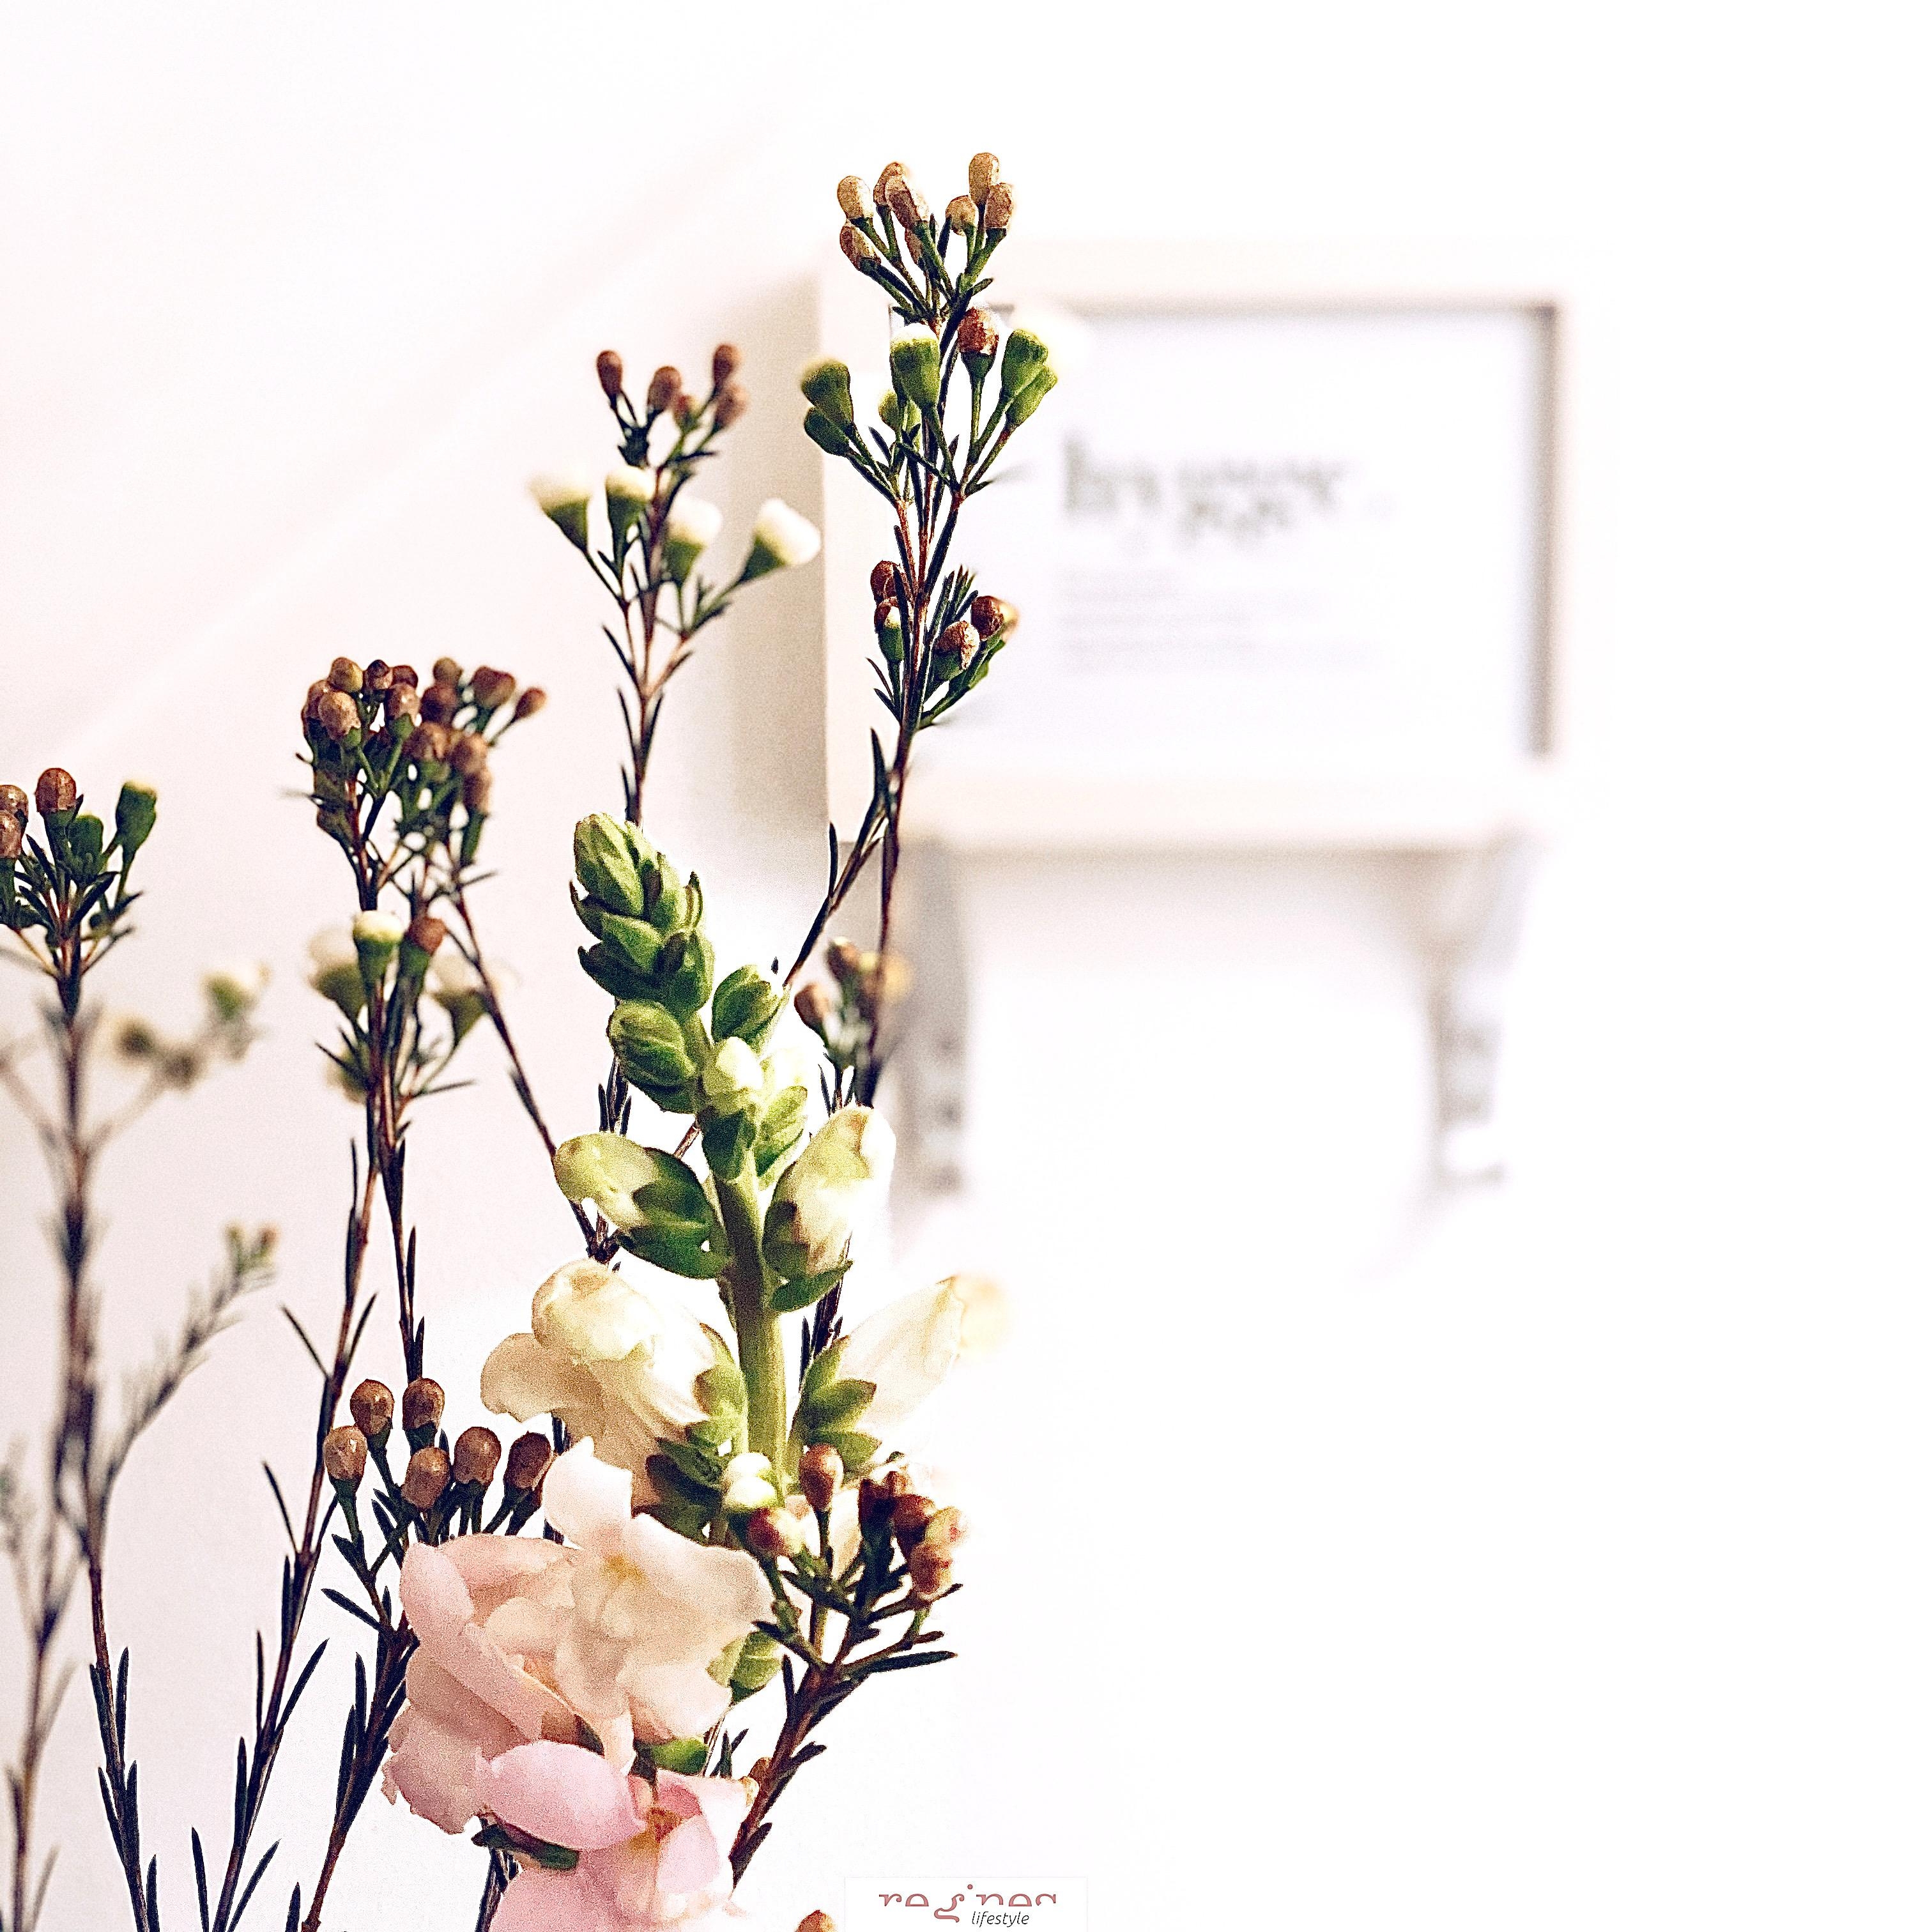 Ein bisschen Frühling im Gäste-WC ...

#wachsblumen #löwenmäulchen #freshflowers #hygge #whiteliving #minimalismus 